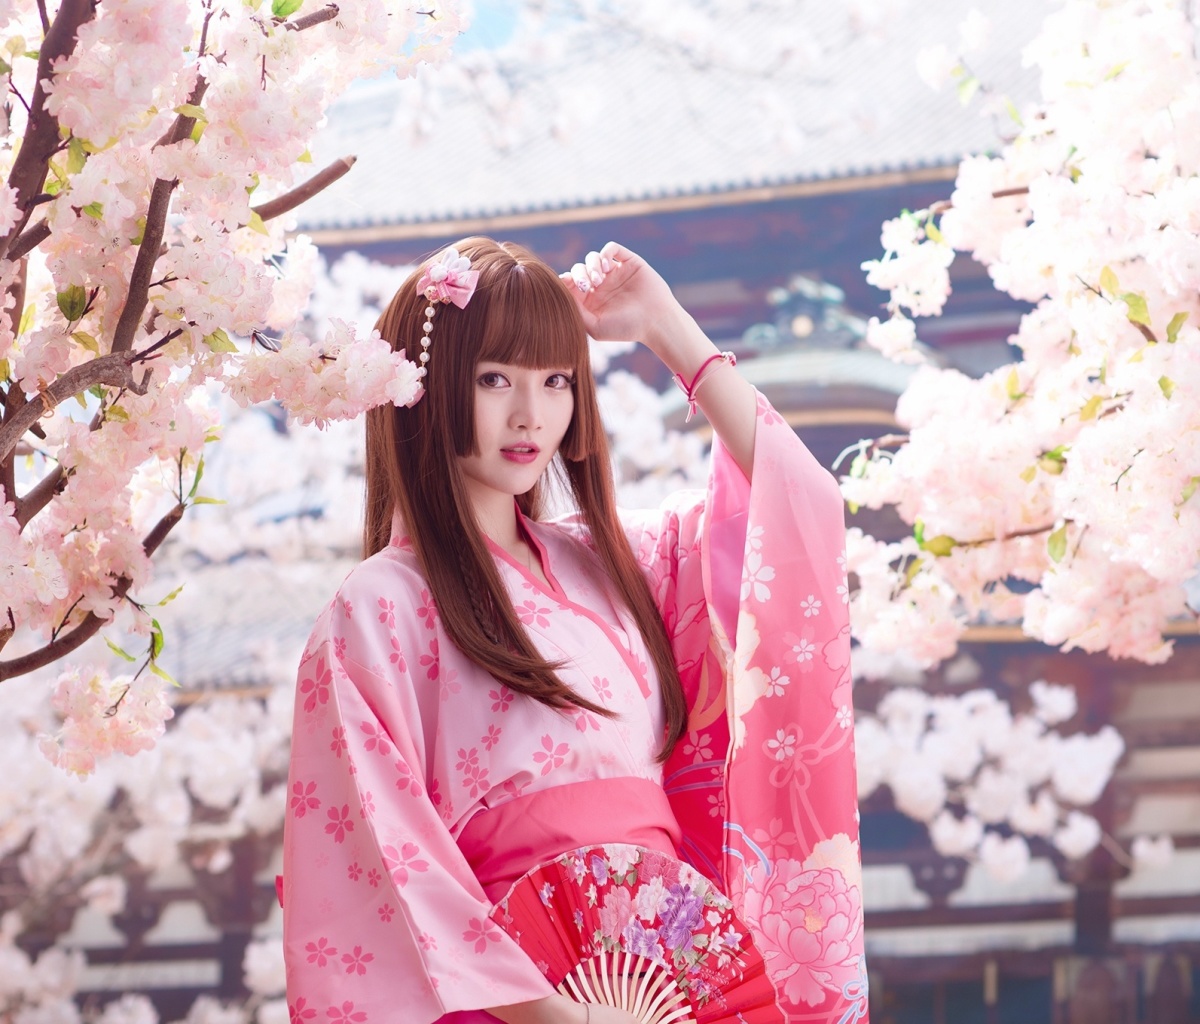 Das Japanese Girl in Kimono Wallpaper 1200x1024